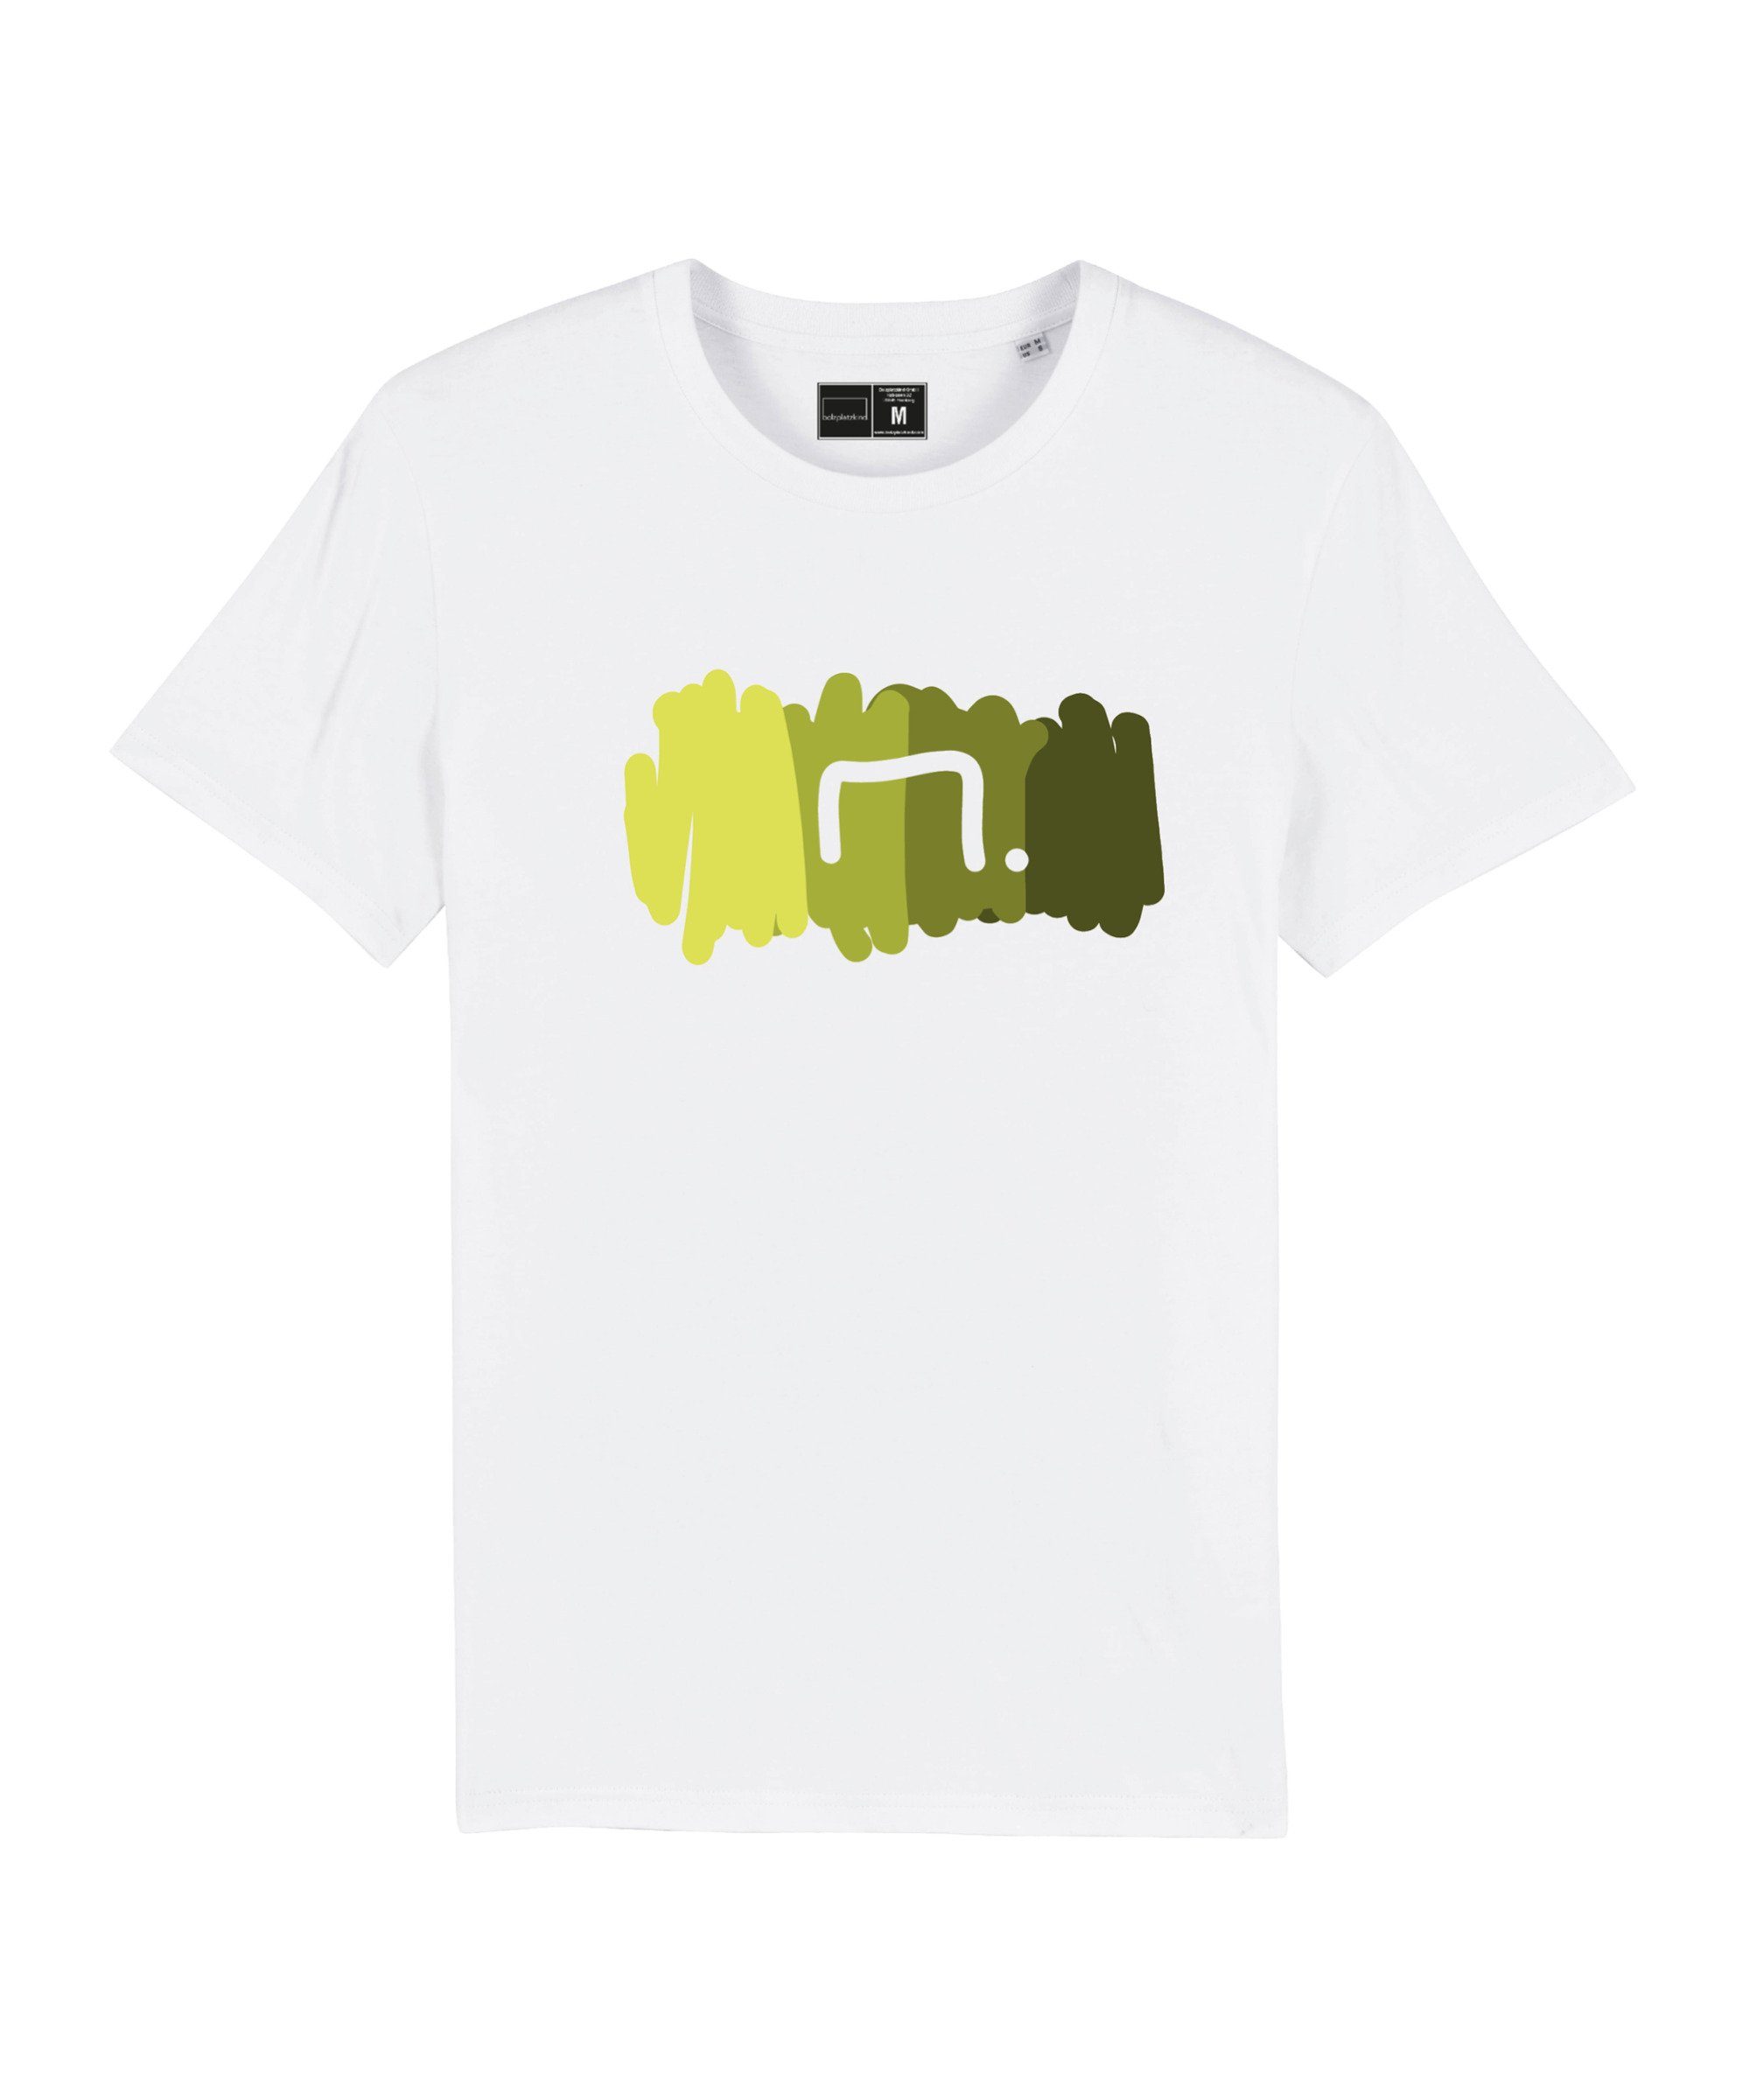 T-Shirt "Free" Bolzplatzkind Produkt weissgruen T-Shirt Nachhaltiges